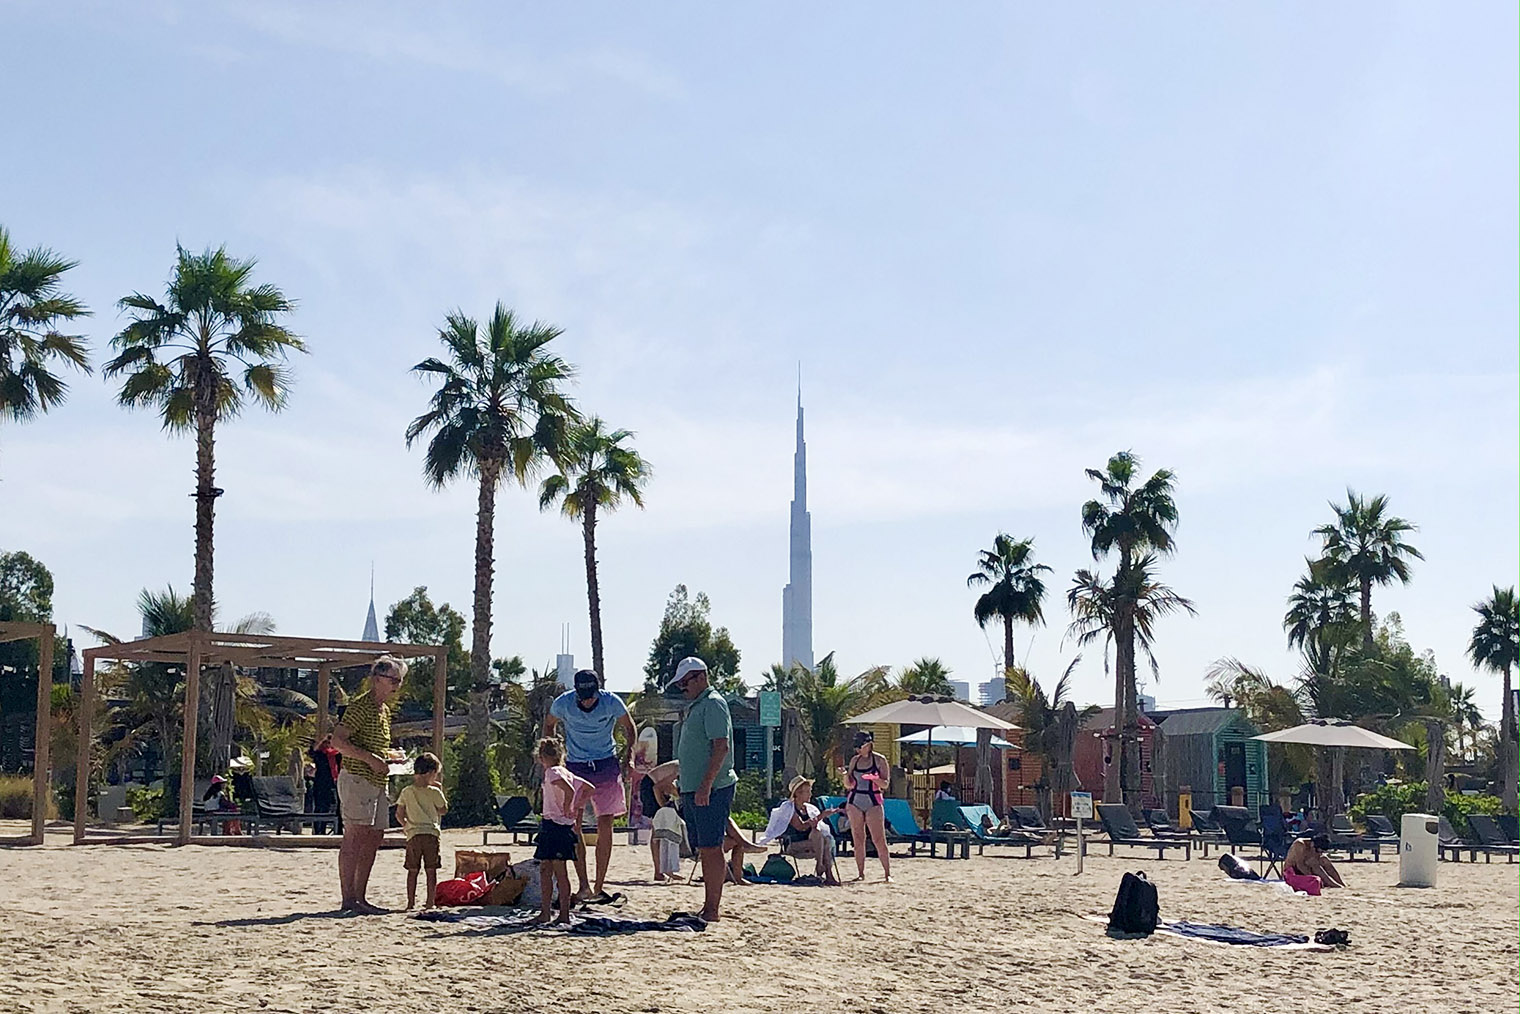 С любой точки пляжа можно увидеть Бурдж-Халифу — самое высокое здание мира, в котором 163 этажа